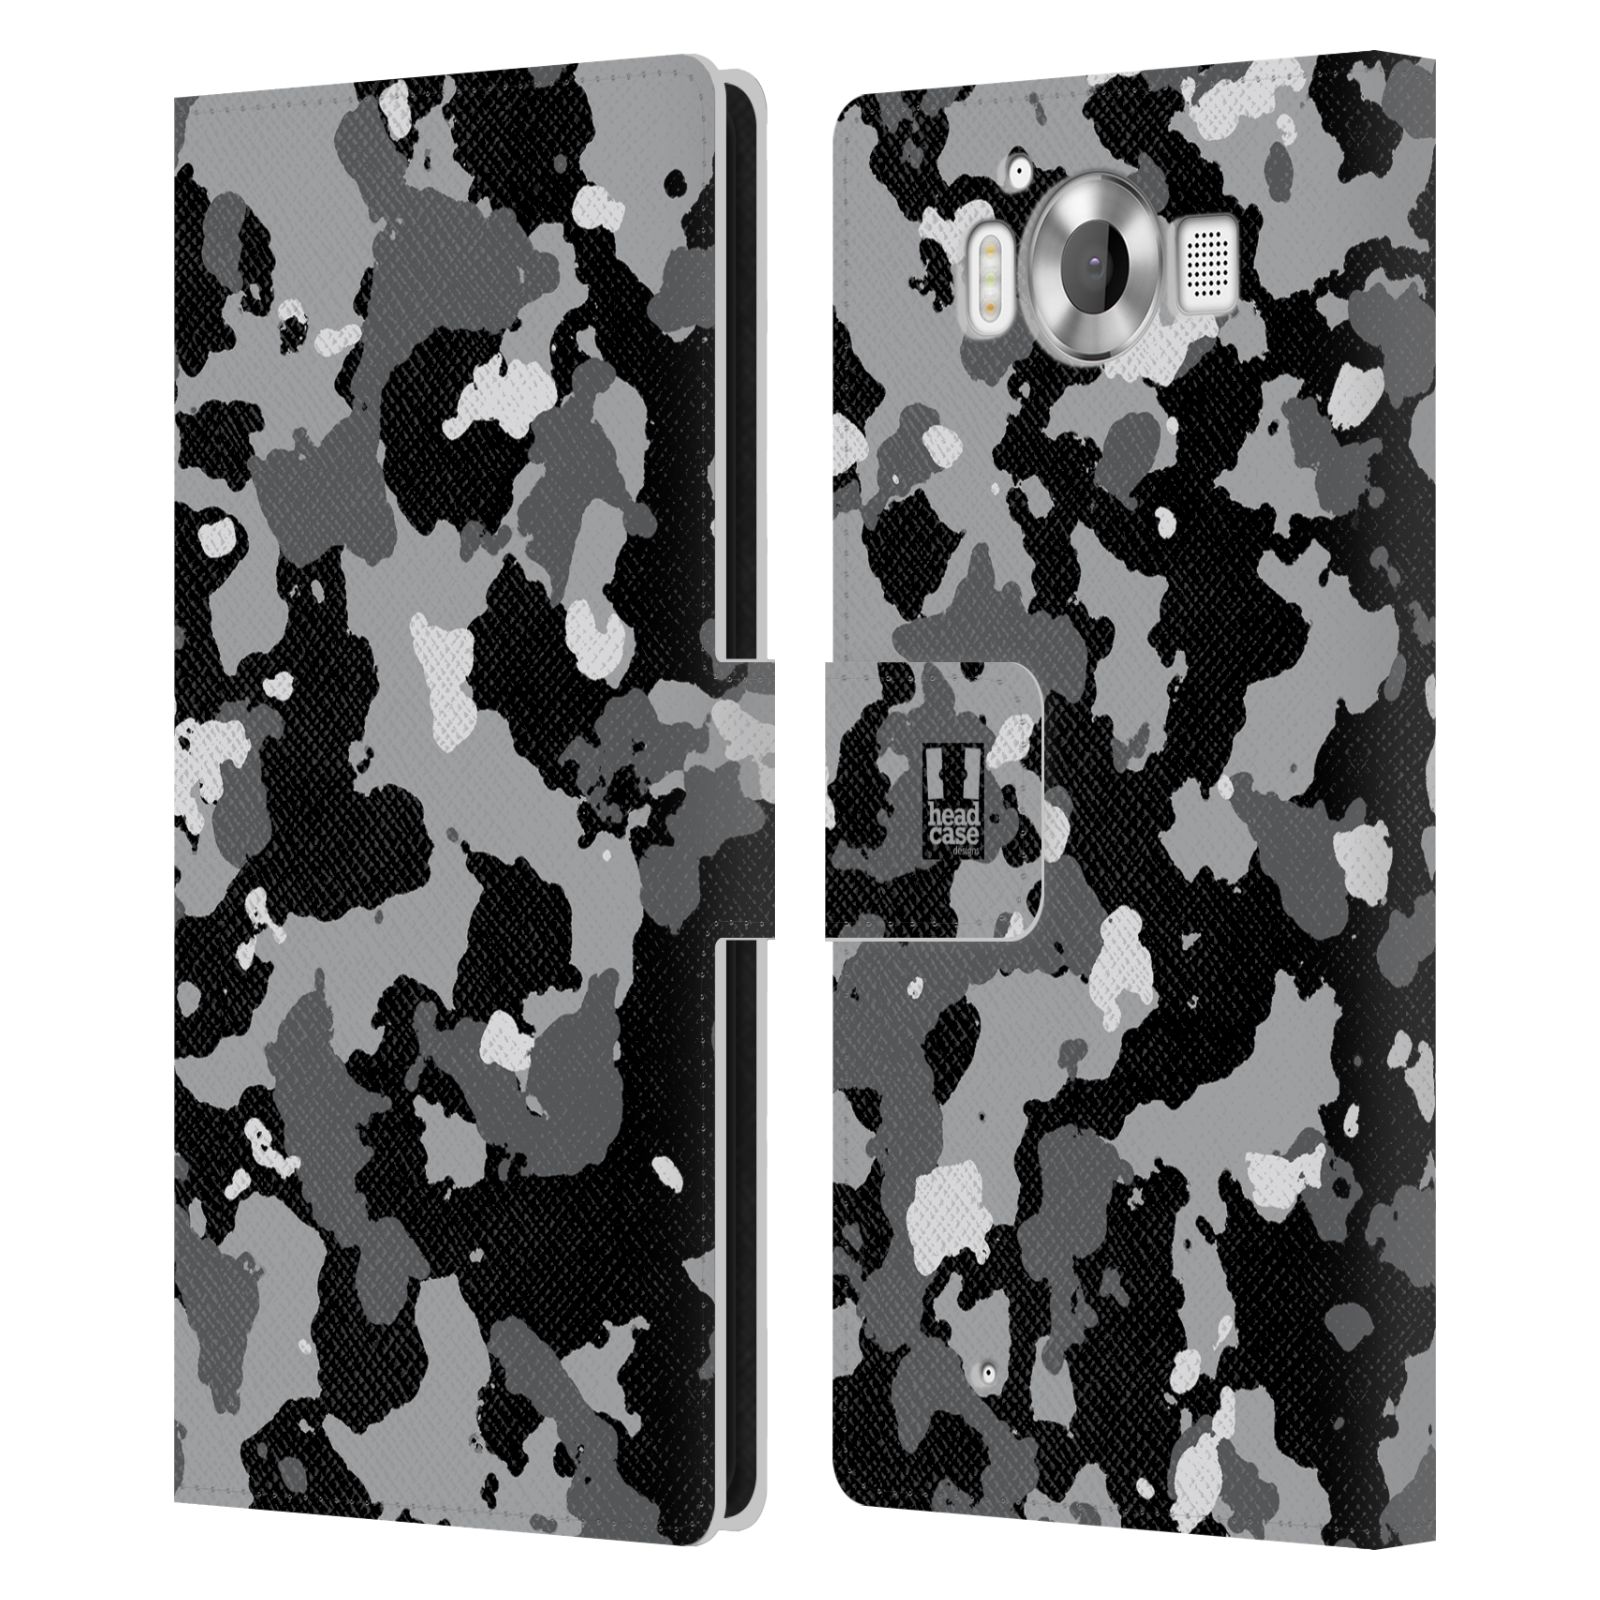 Pouzdro na mobil Nokia Lumia 950 - Head Case - kamuflaž černá a šedá